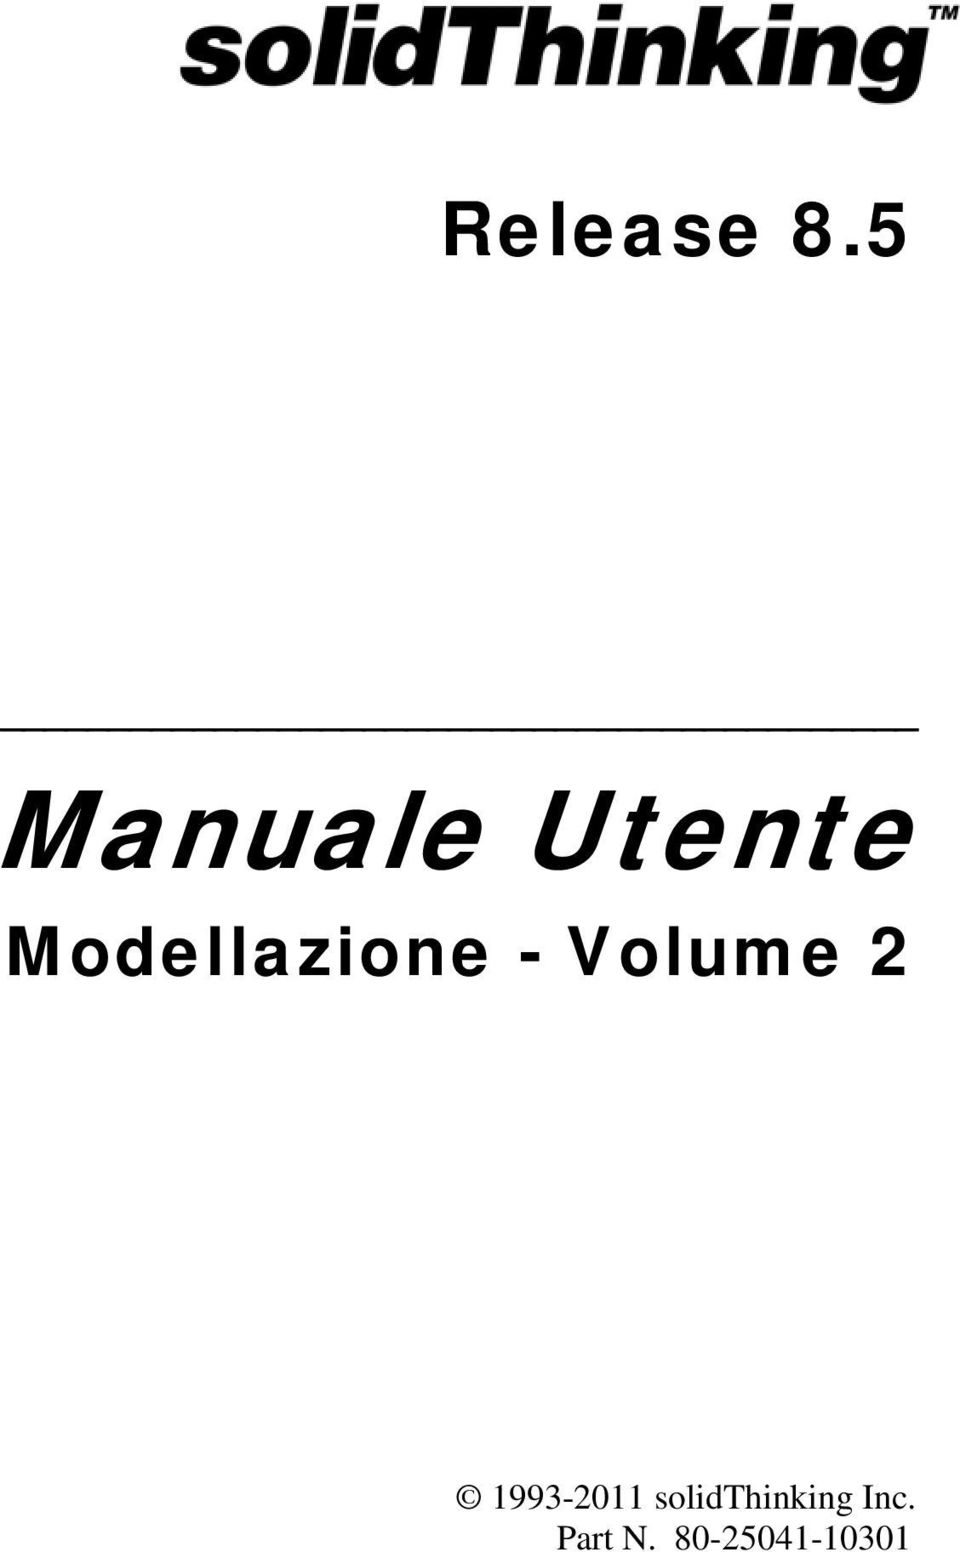 Modellazione - Volume 2